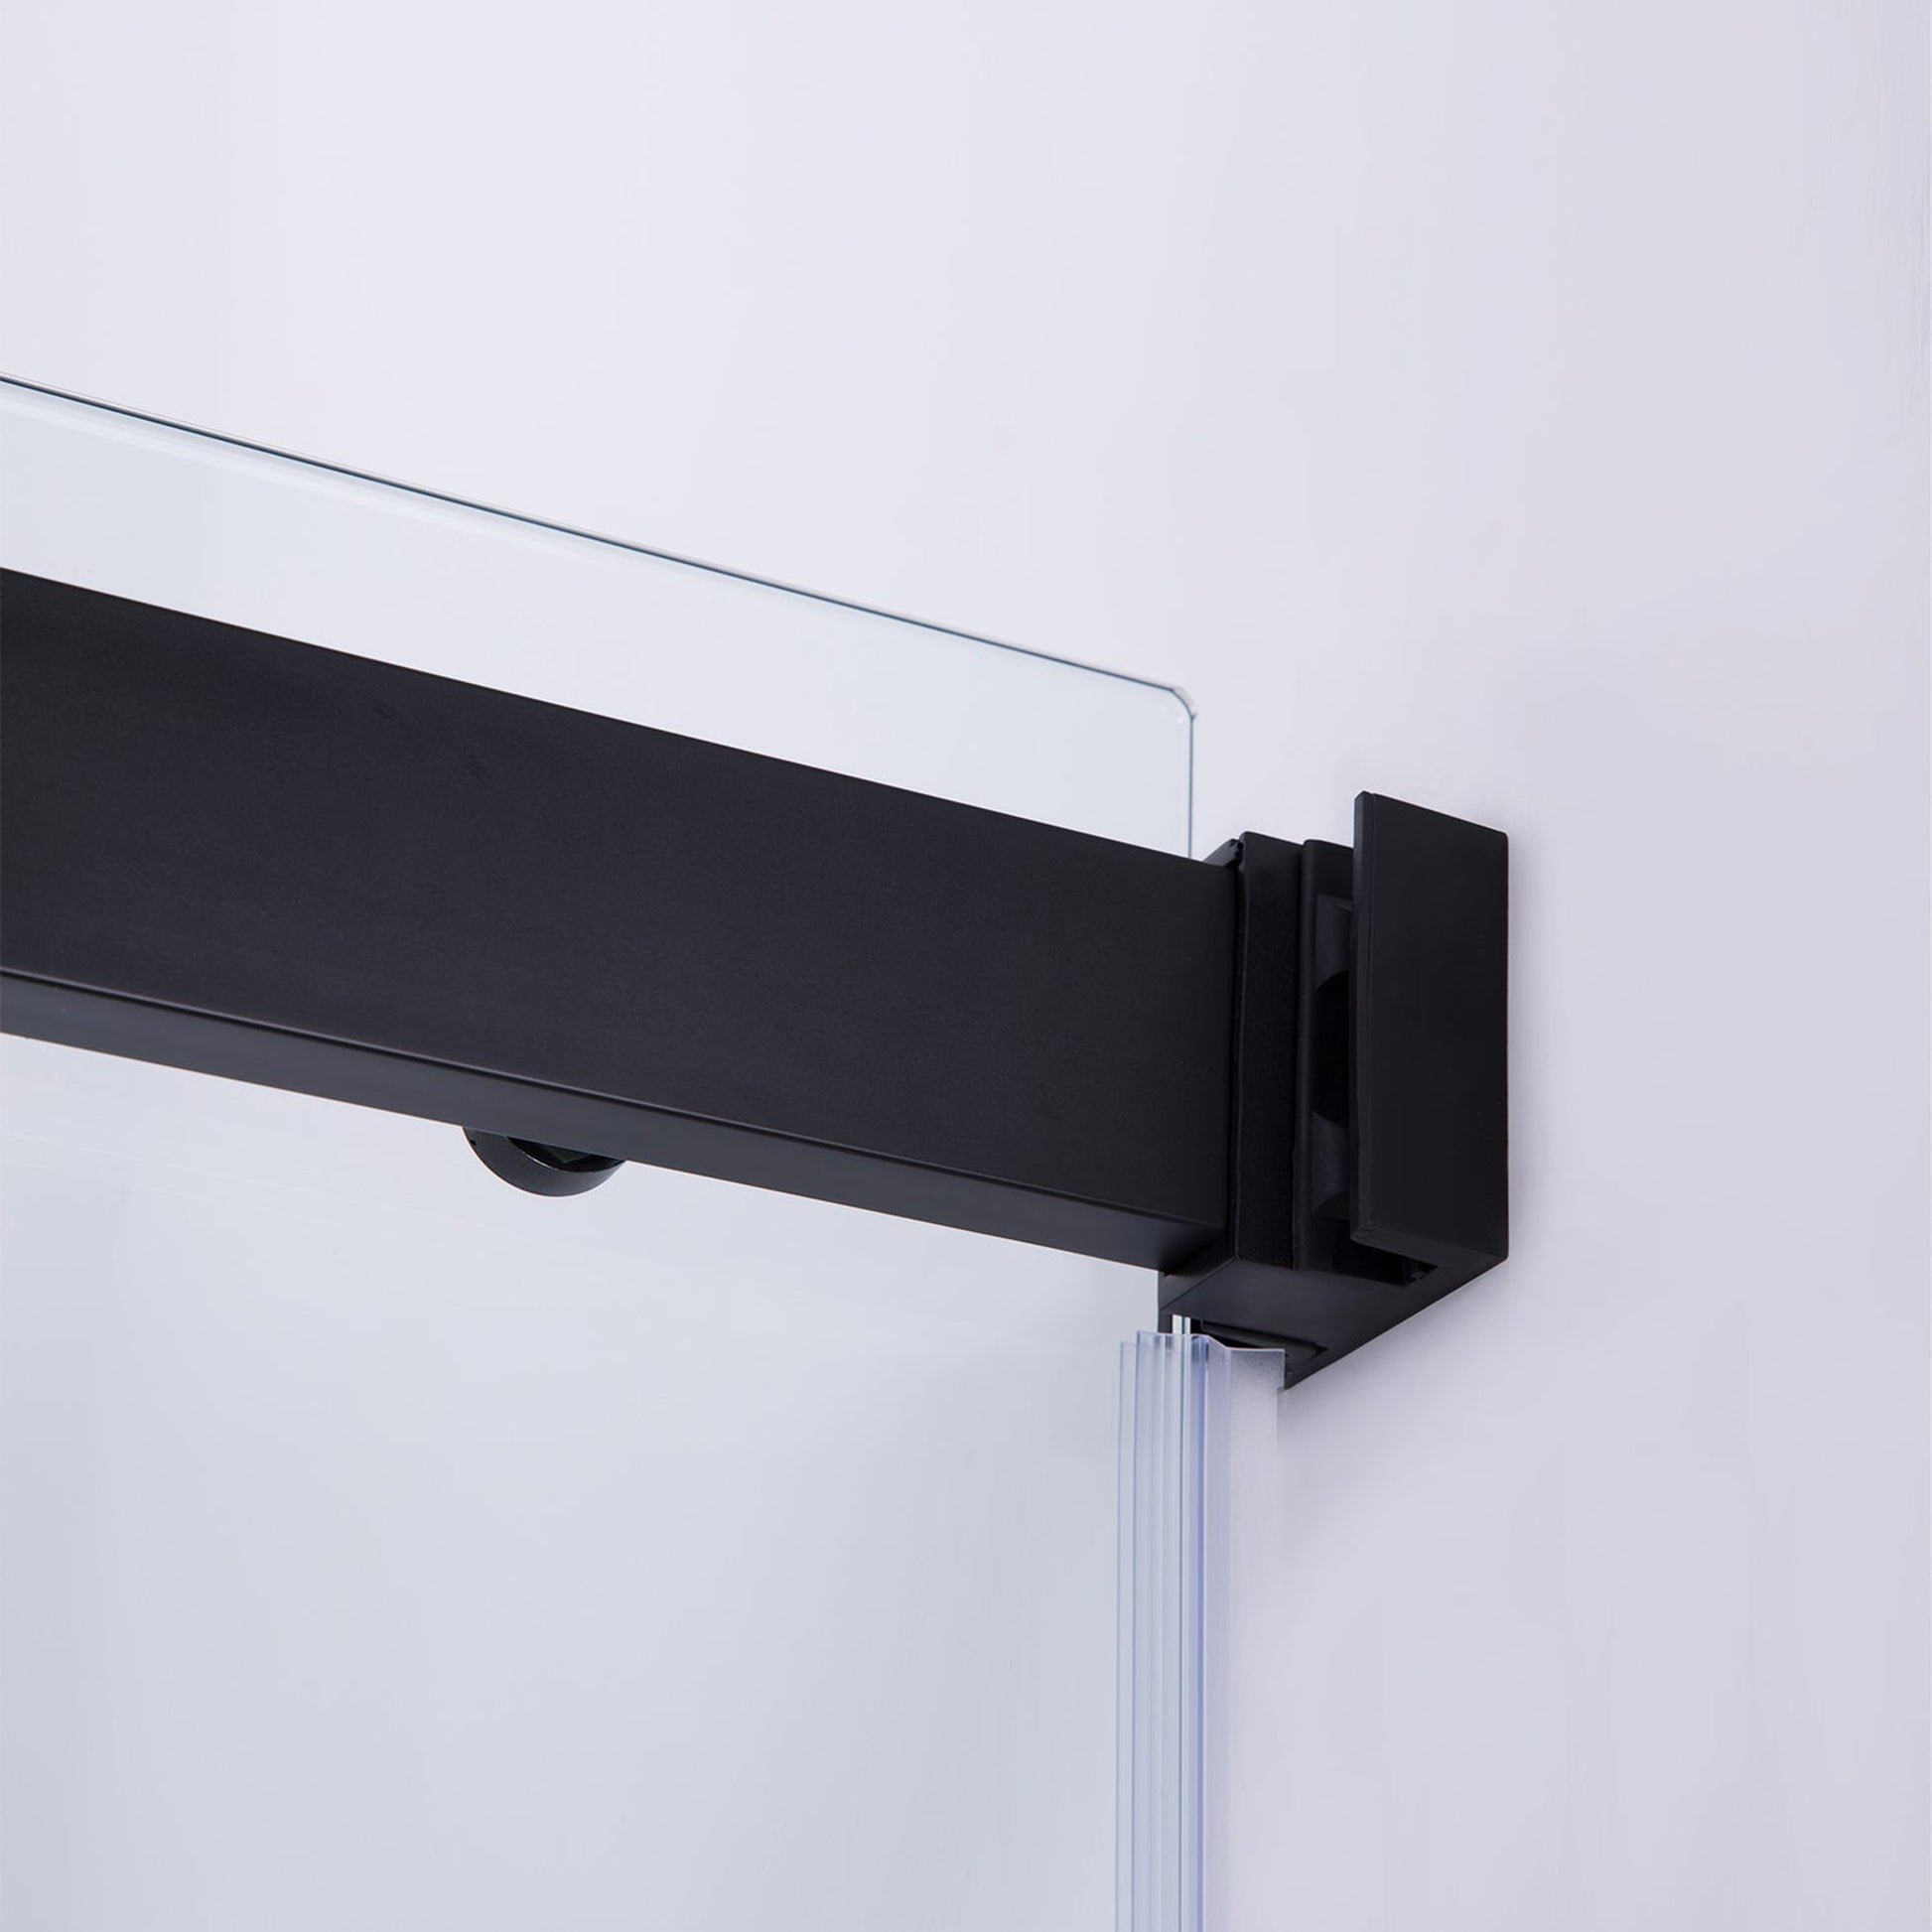 Vinnova Spezia 64" x 76" Rectangle Double Sliding Frameless Shower Enclosure in Matte Black Finish